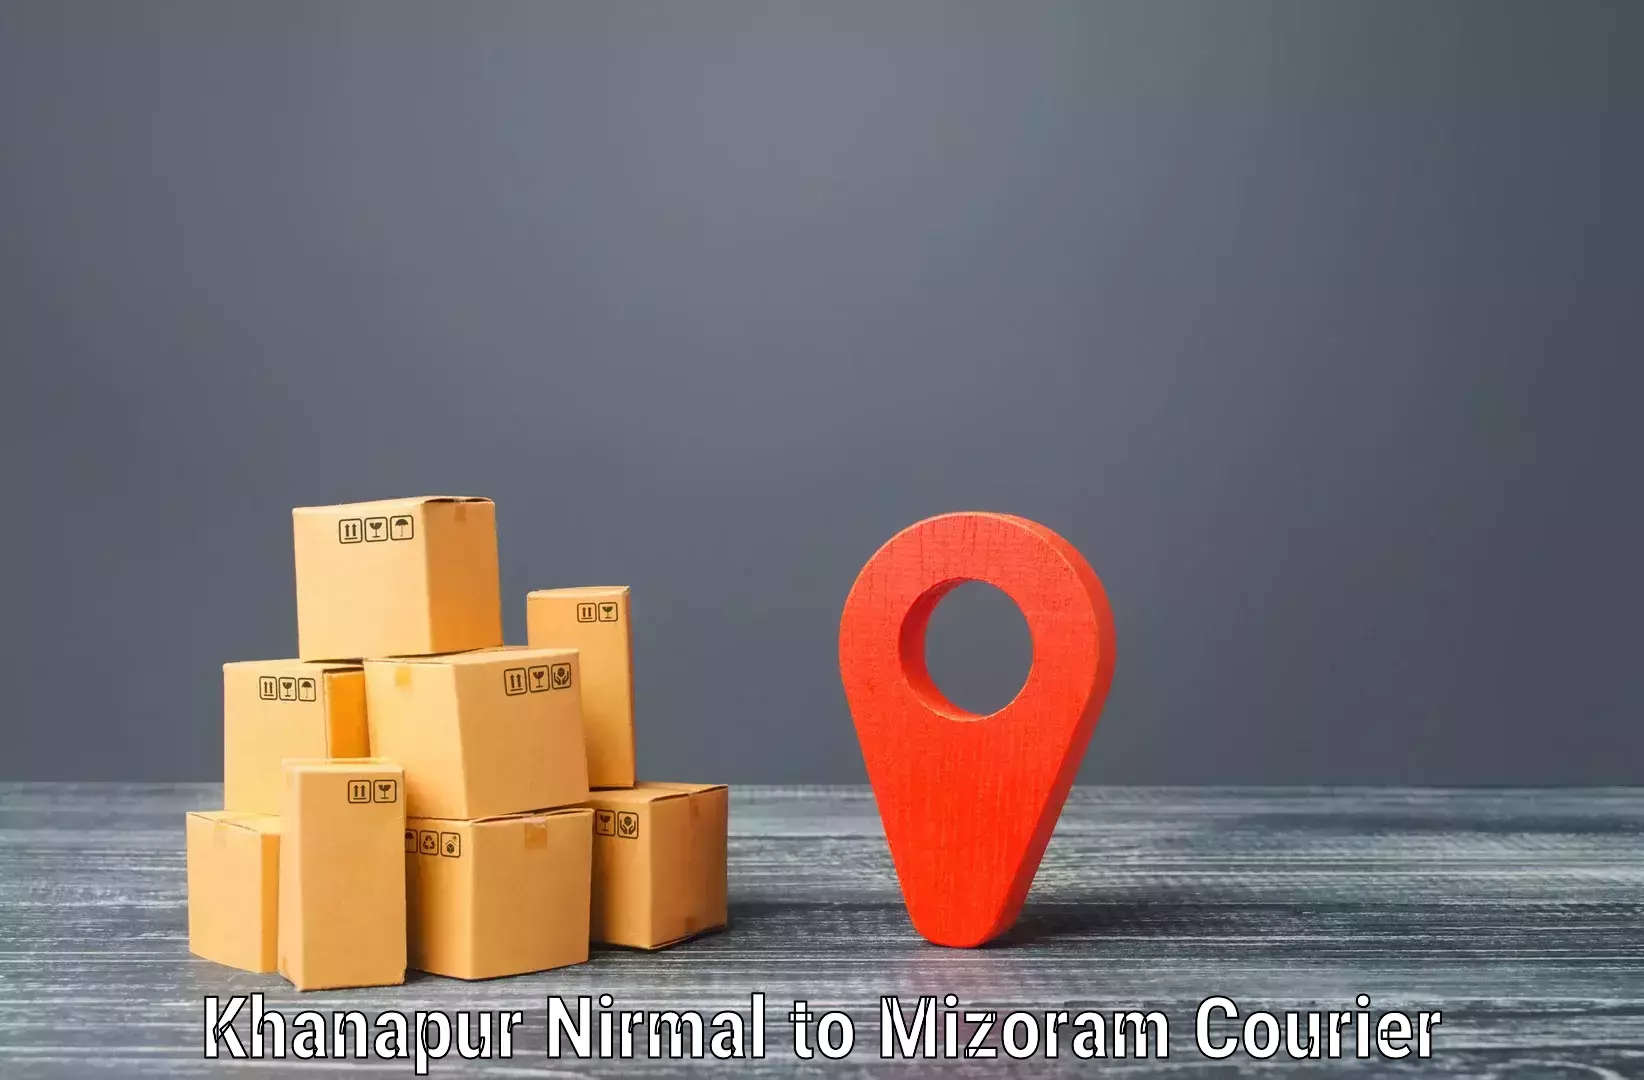 Online package tracking Khanapur Nirmal to Khawzawl